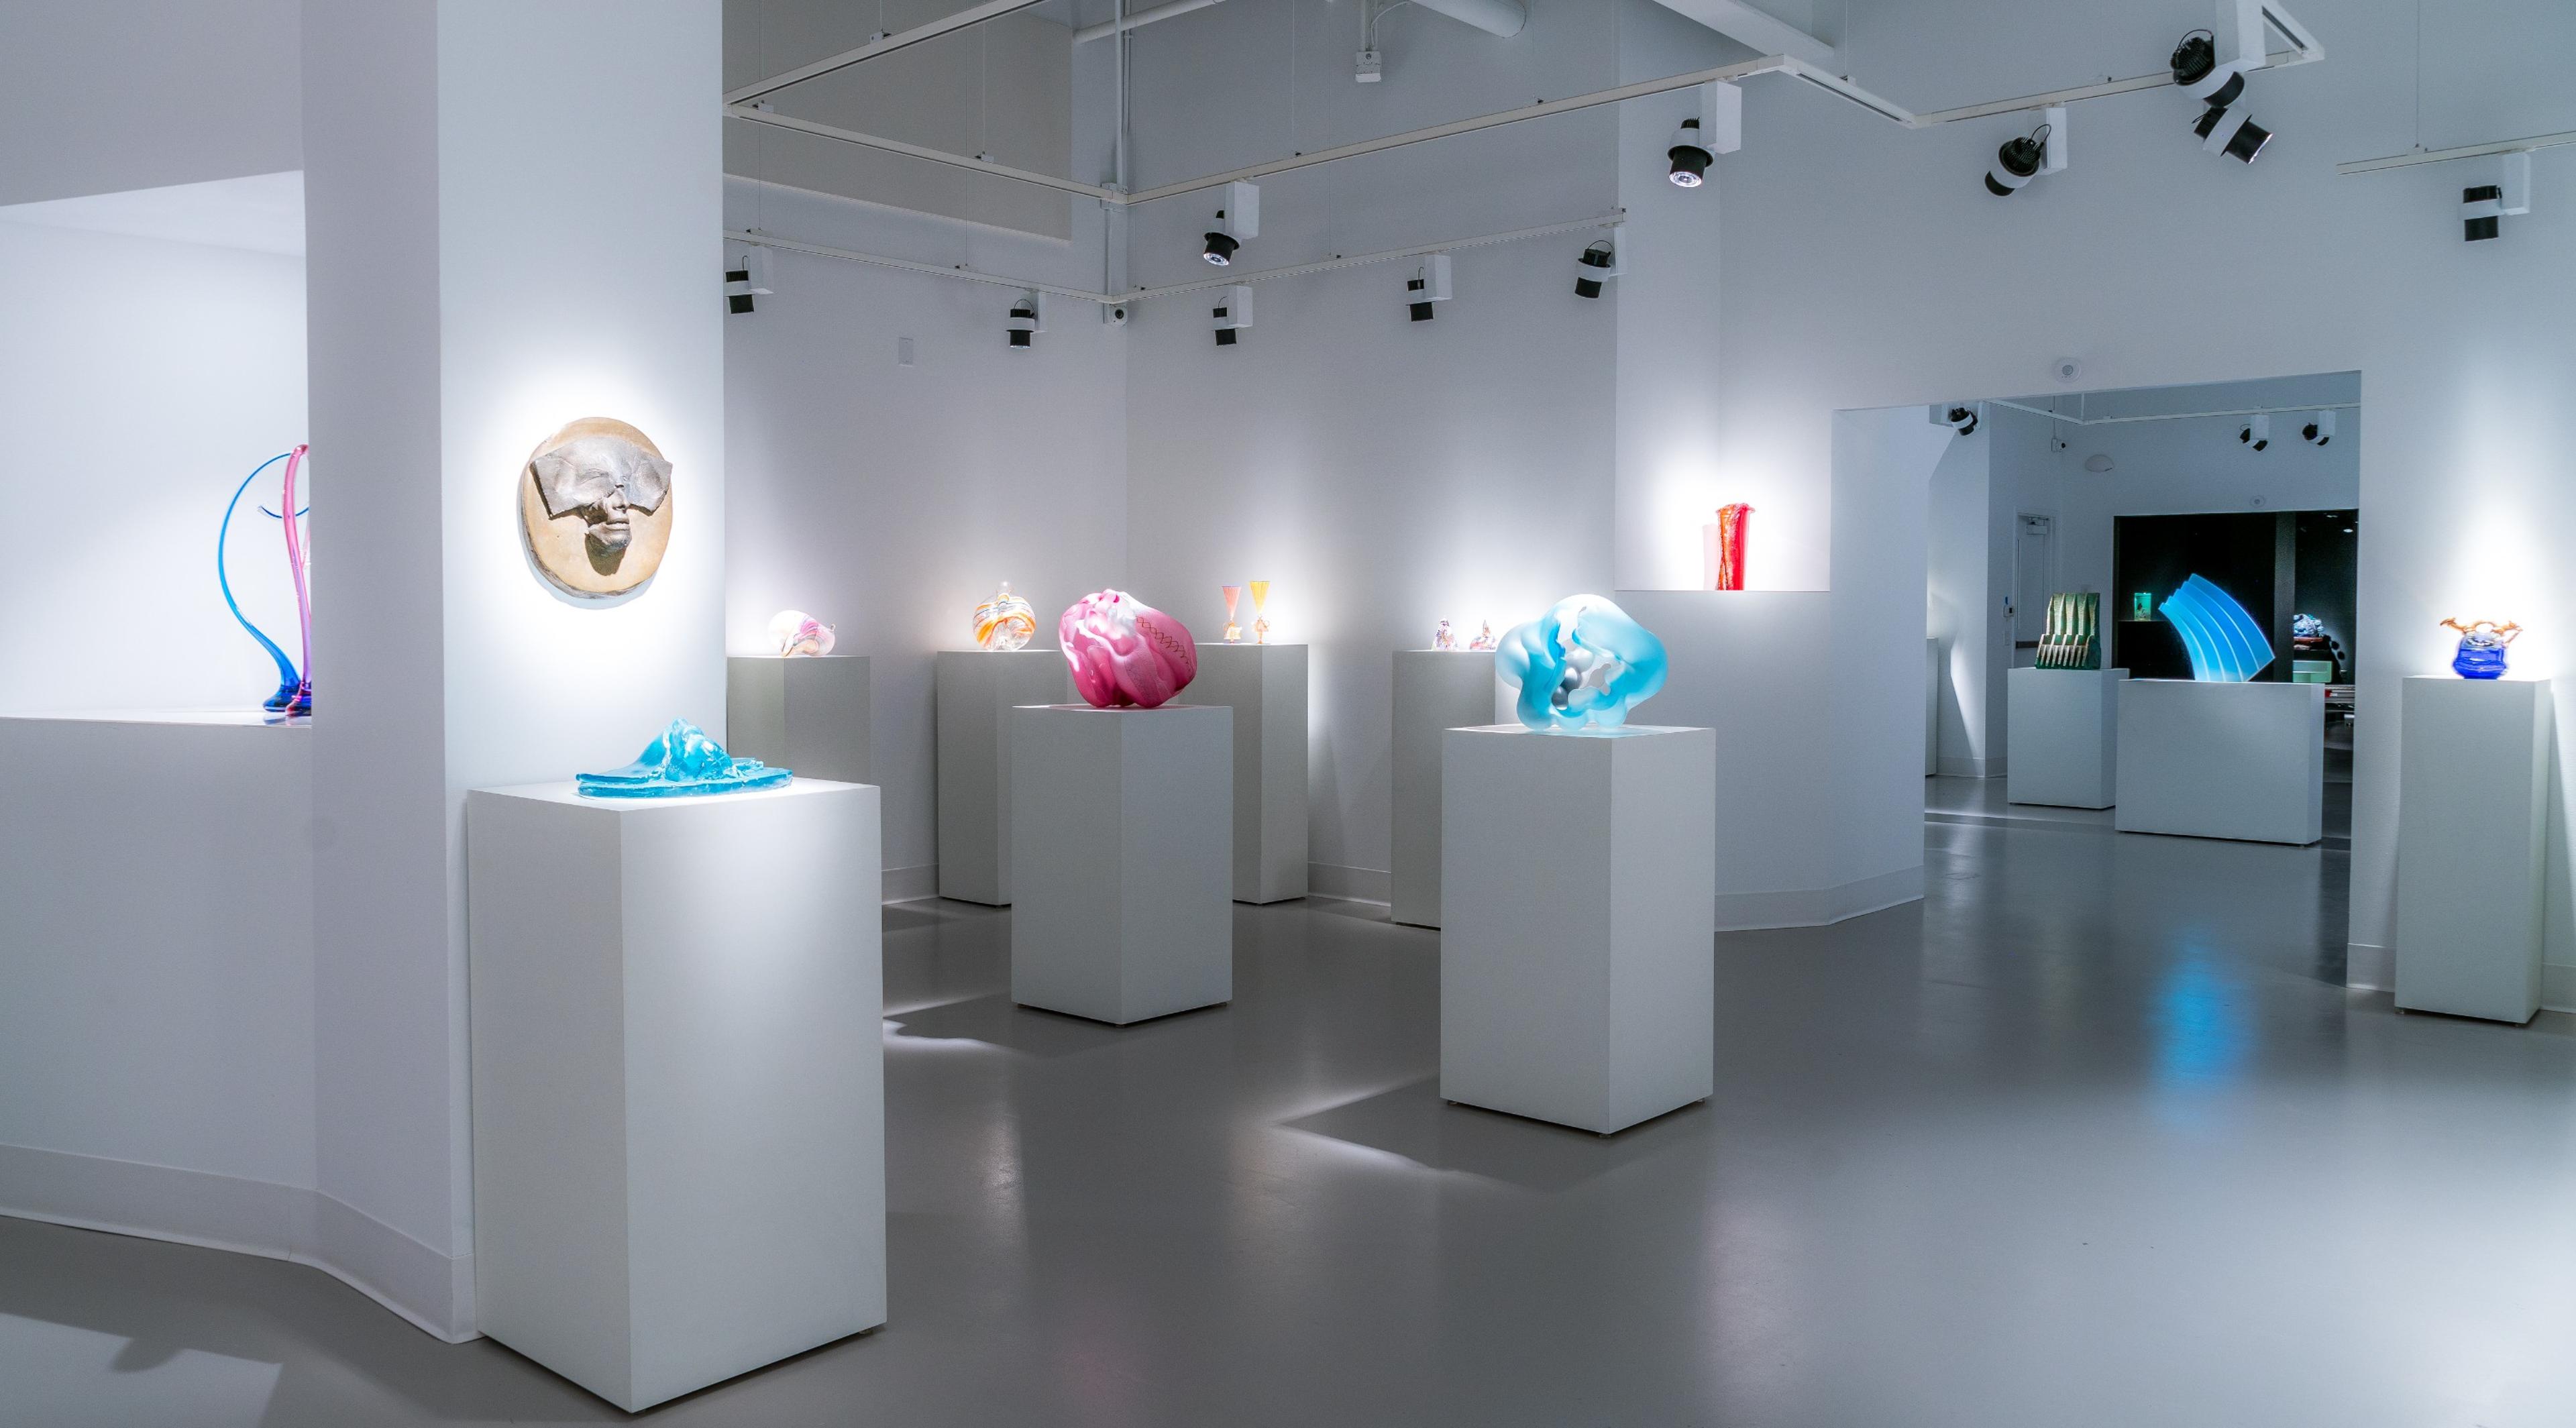 Imagine Museum: Contemporary Glass Art